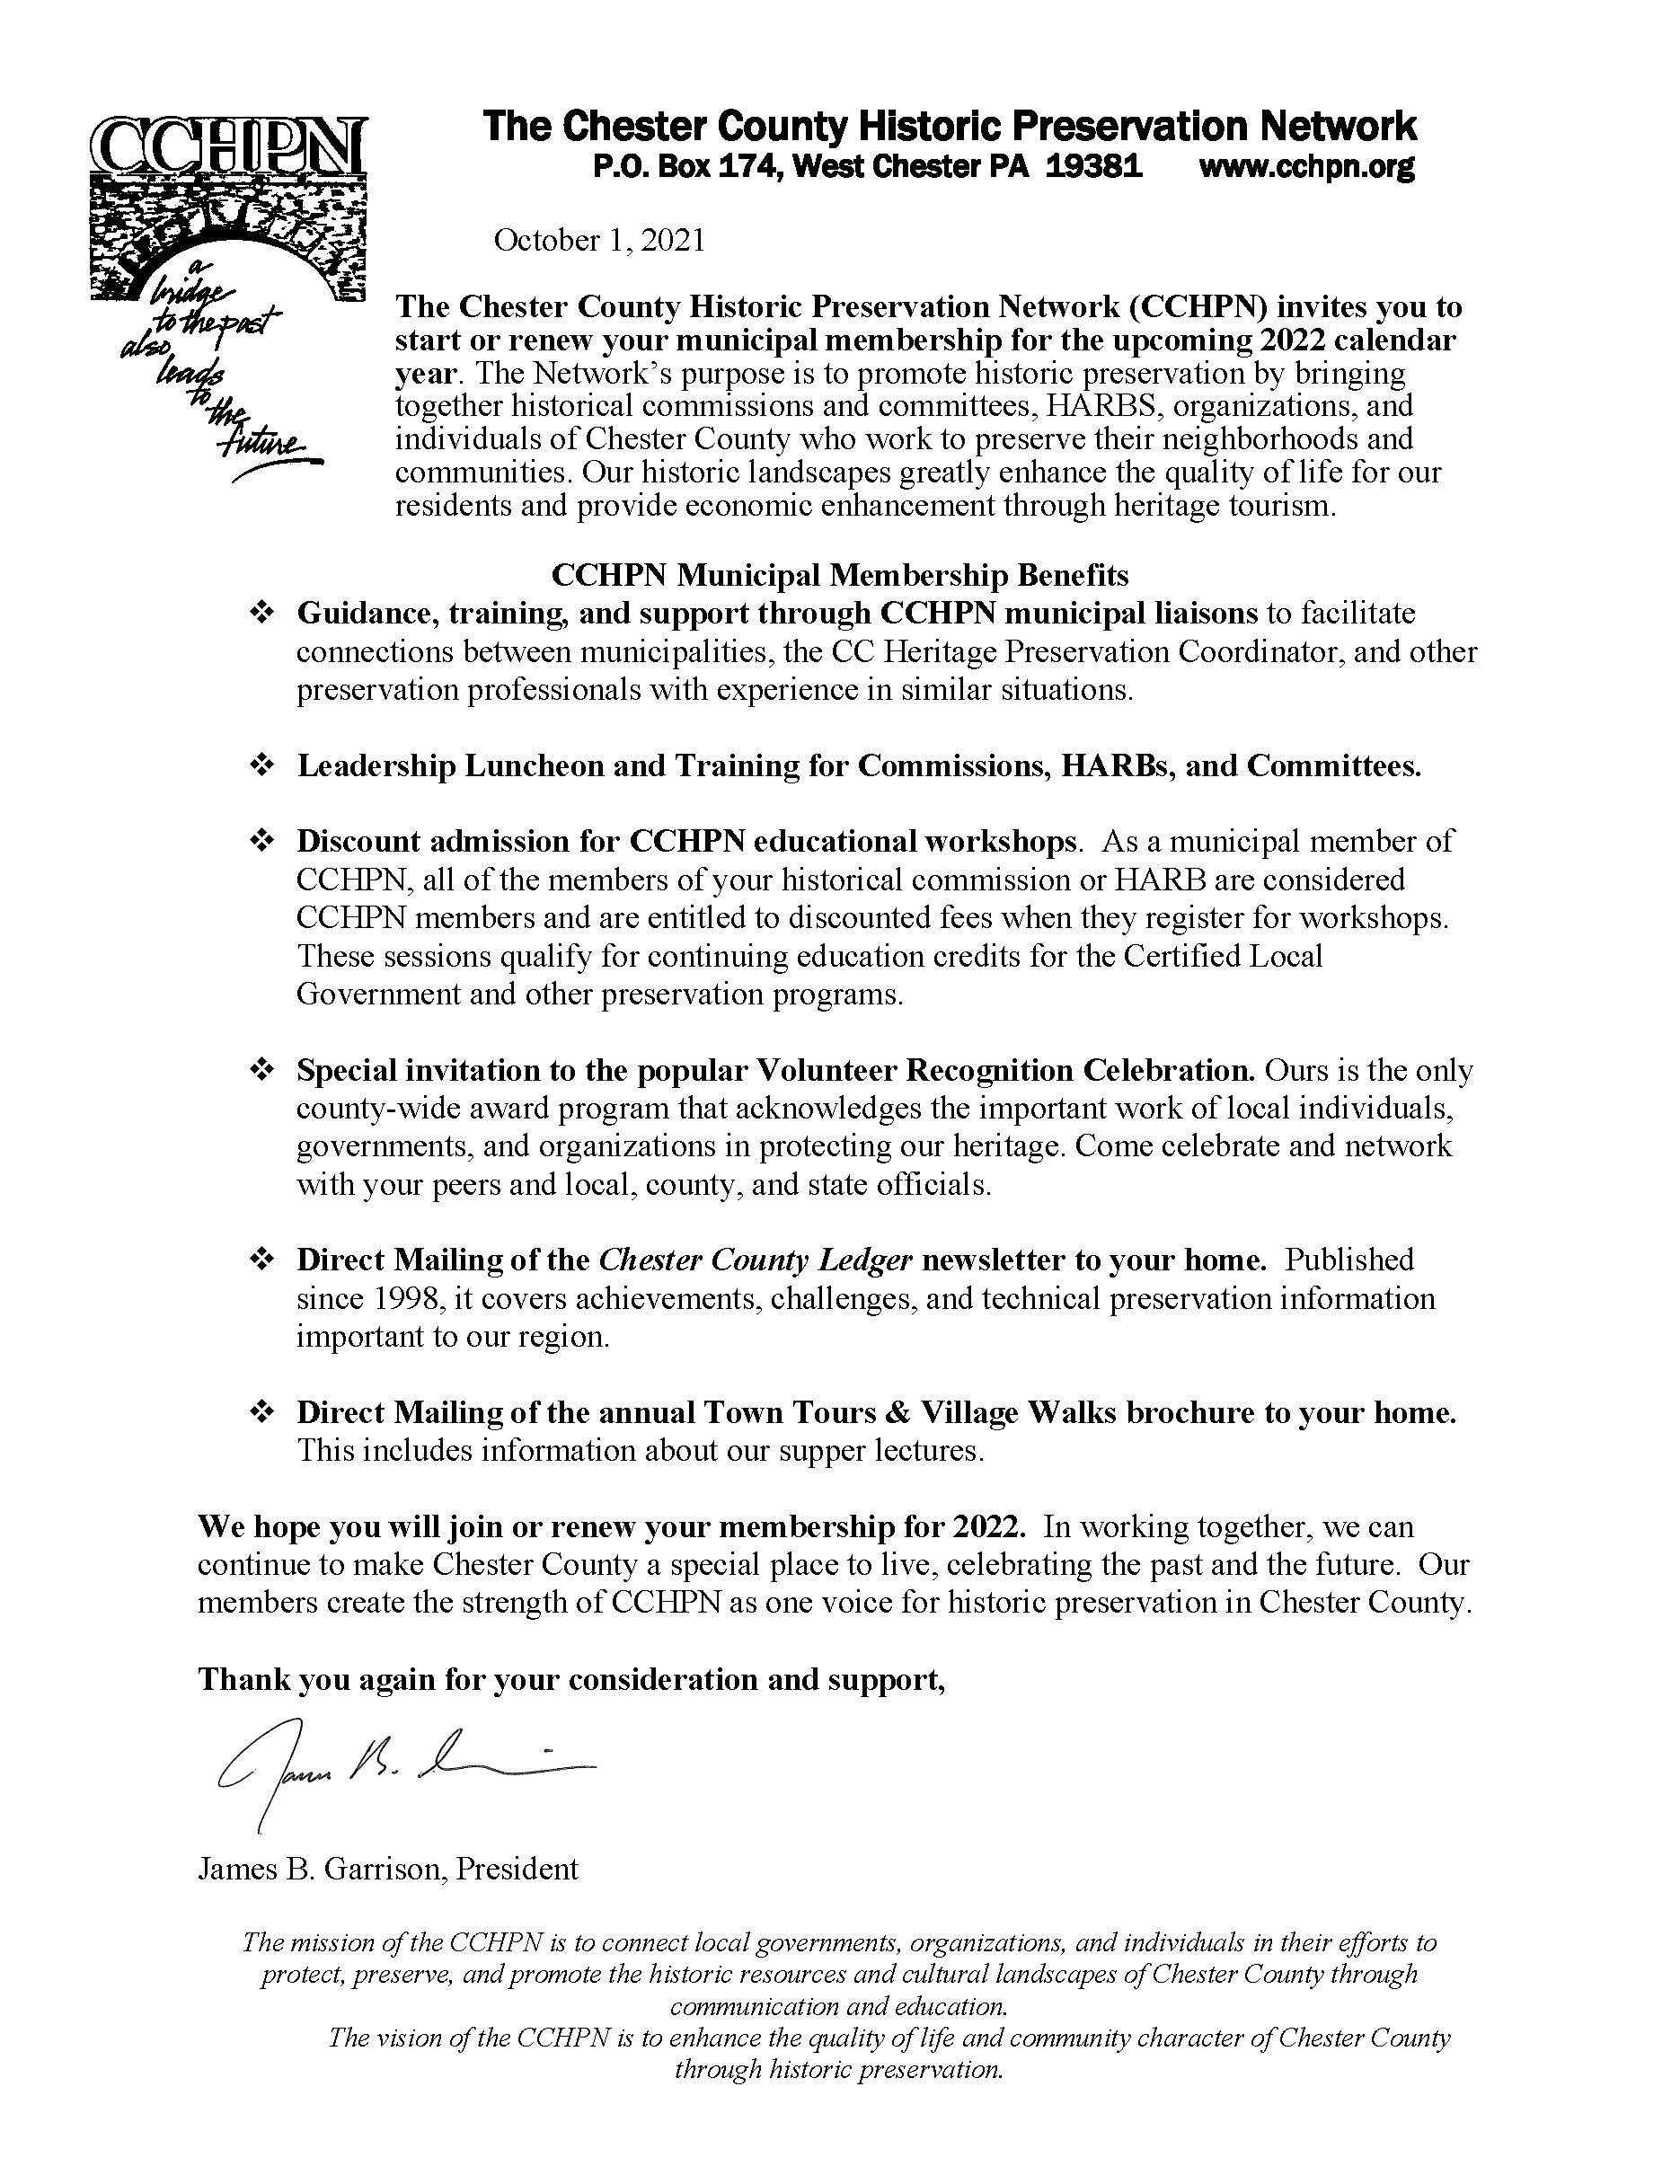 Municipal Membership Letter 2022 Page 1